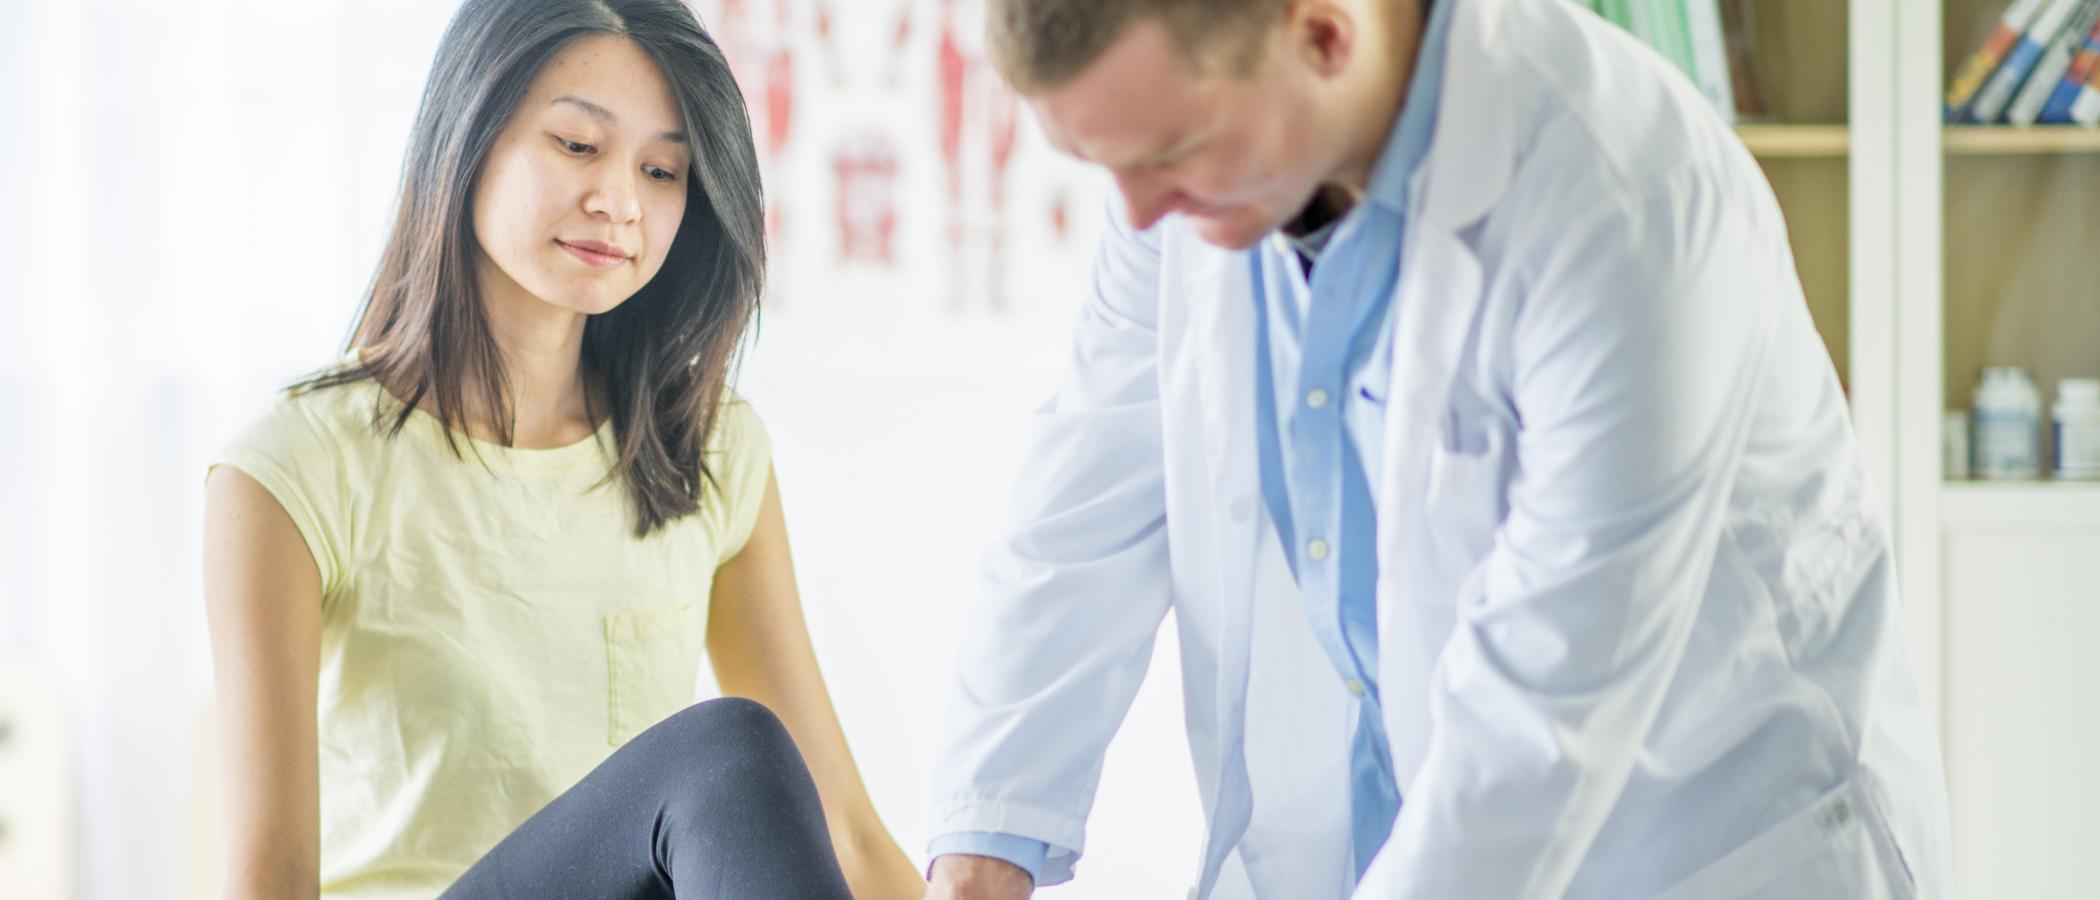 Eine junge Frau lässt sich von einem Arzt den Knöchel untersuchen.